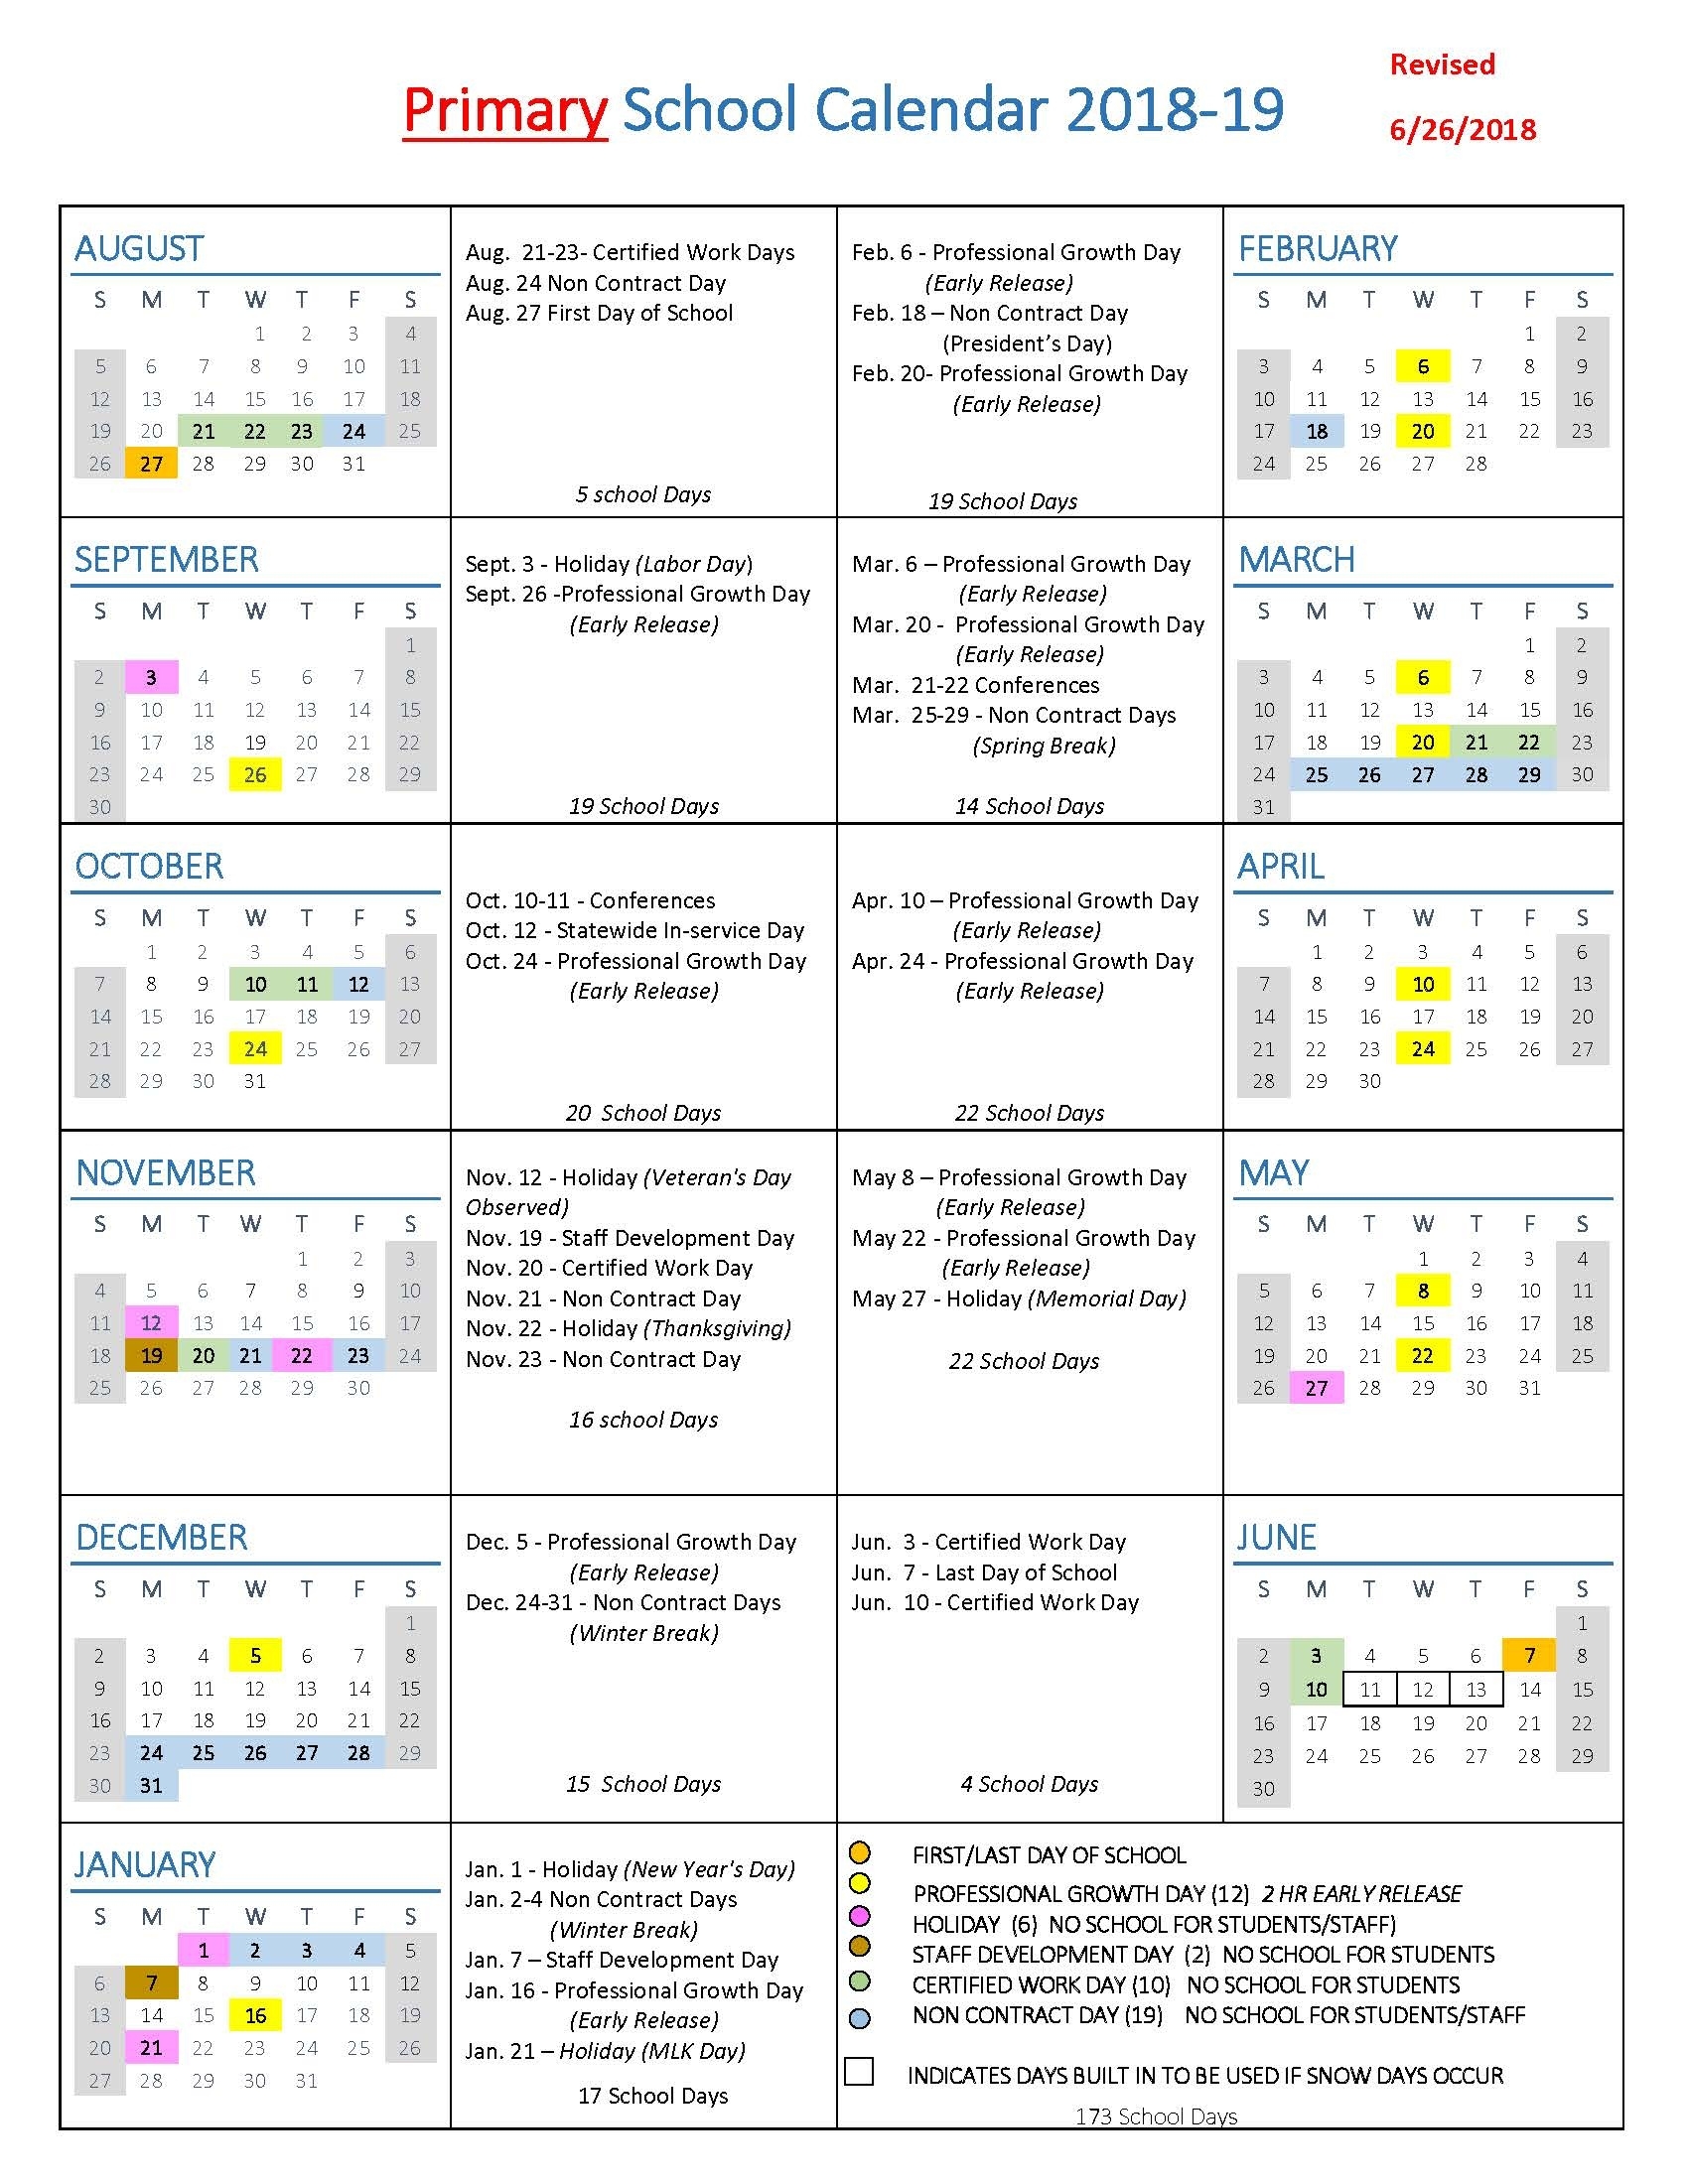 School Year Calendars / School Year Calendars Perky Calendar For School Year